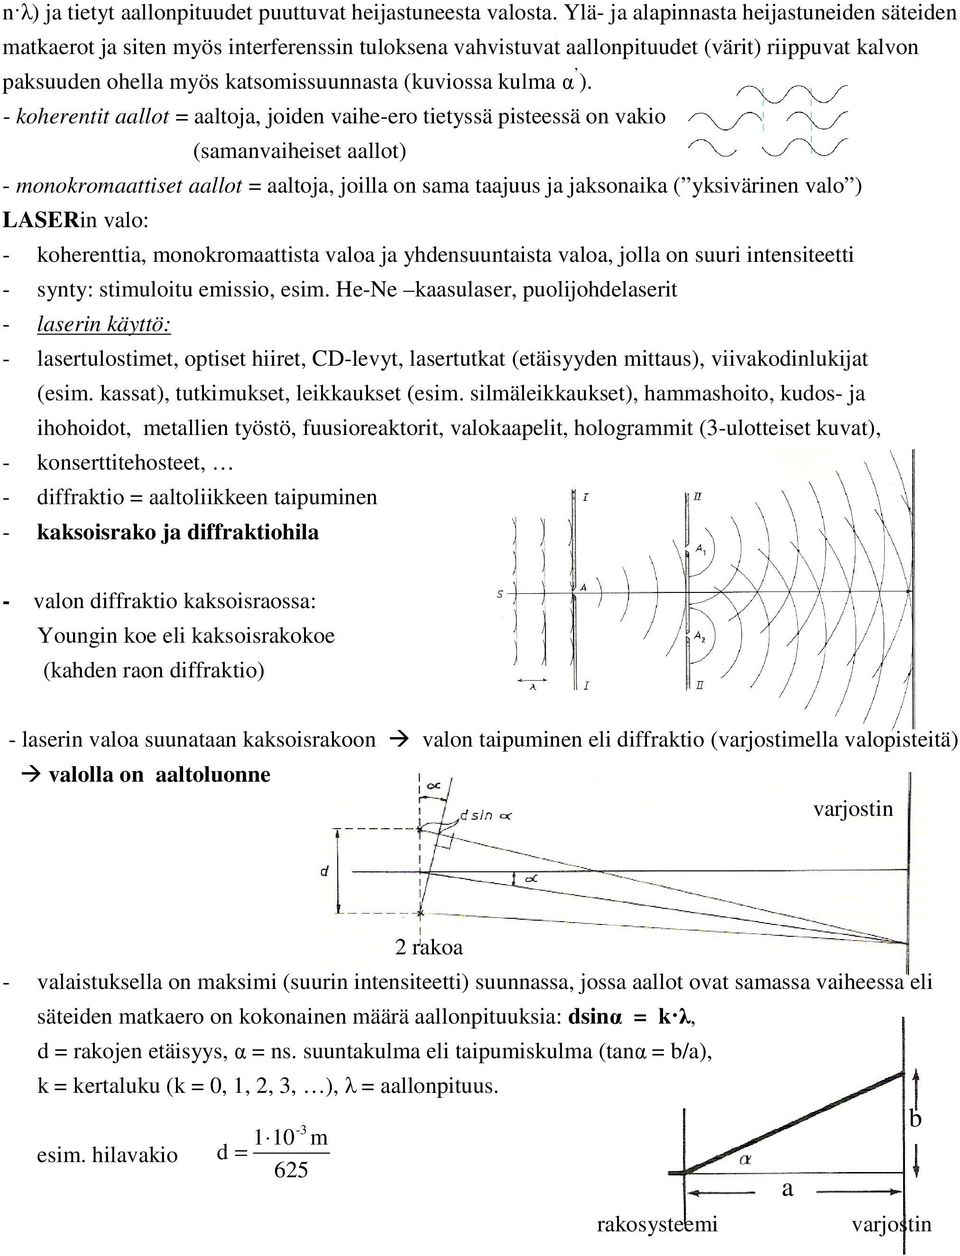 - koheretit aallot = aaltoja, joide vaihe-ero tietyssä pisteessä o vakio (samavaiheiset aallot) - mookromaattiset aallot = aaltoja, joilla o sama taajuus ja jaksoaika ( yksivärie valo ) LASERi valo: